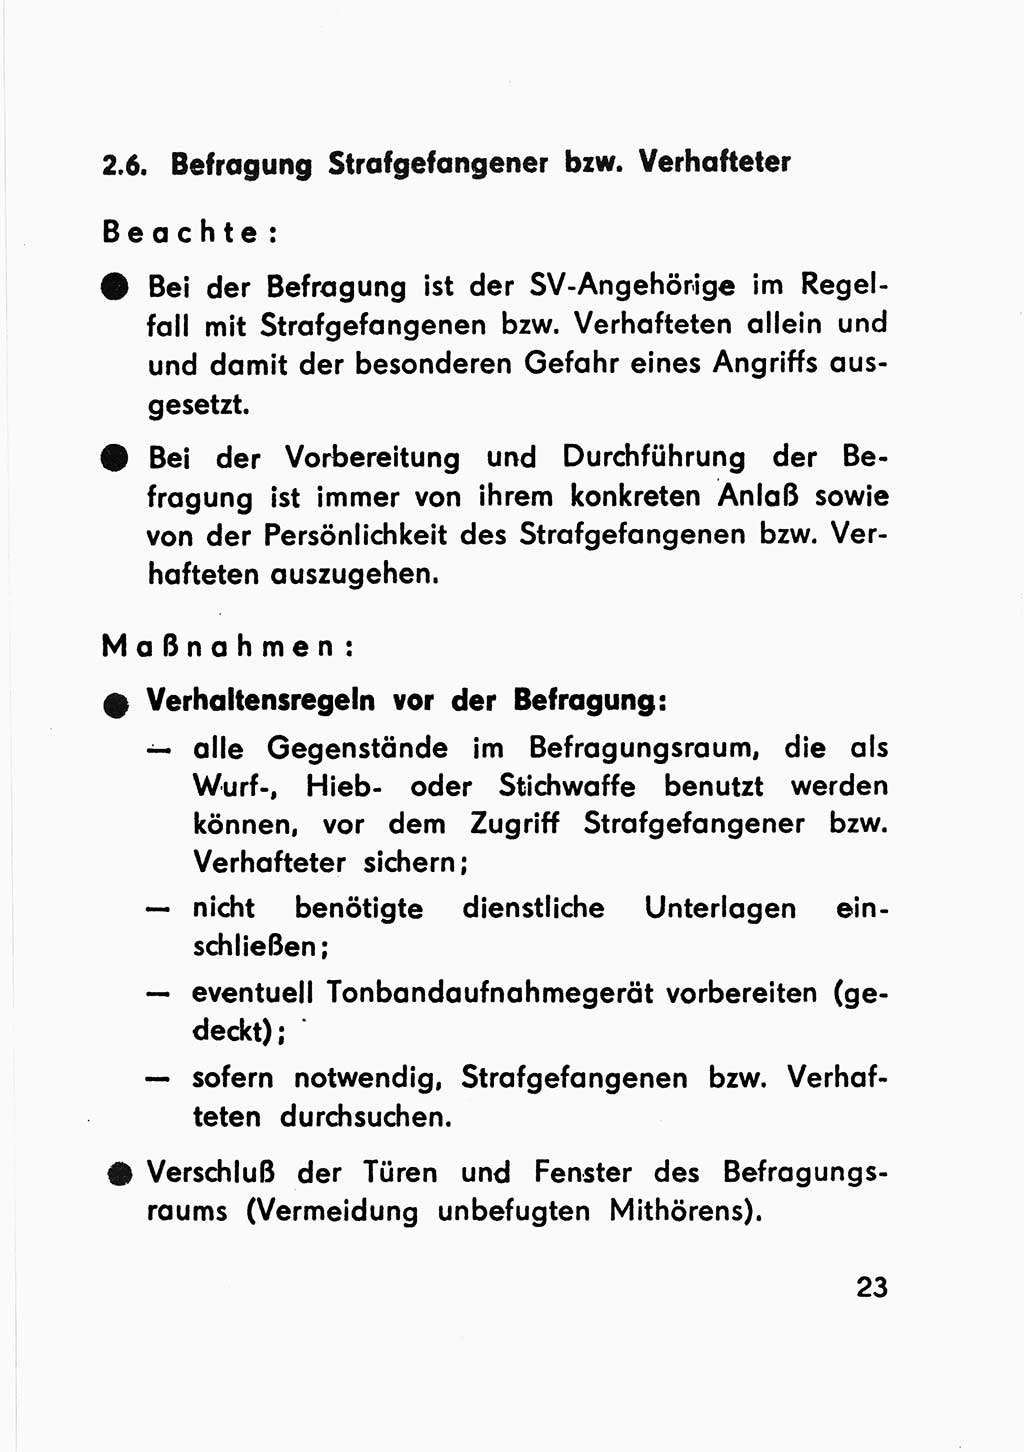 Merkbuch für SV-Angehörige [Strafvollzug (SV) Deutsche Demokratische Republik (DDR)] 1975, Seite 23 (SV-Angeh. DDR 1975, S. 23)